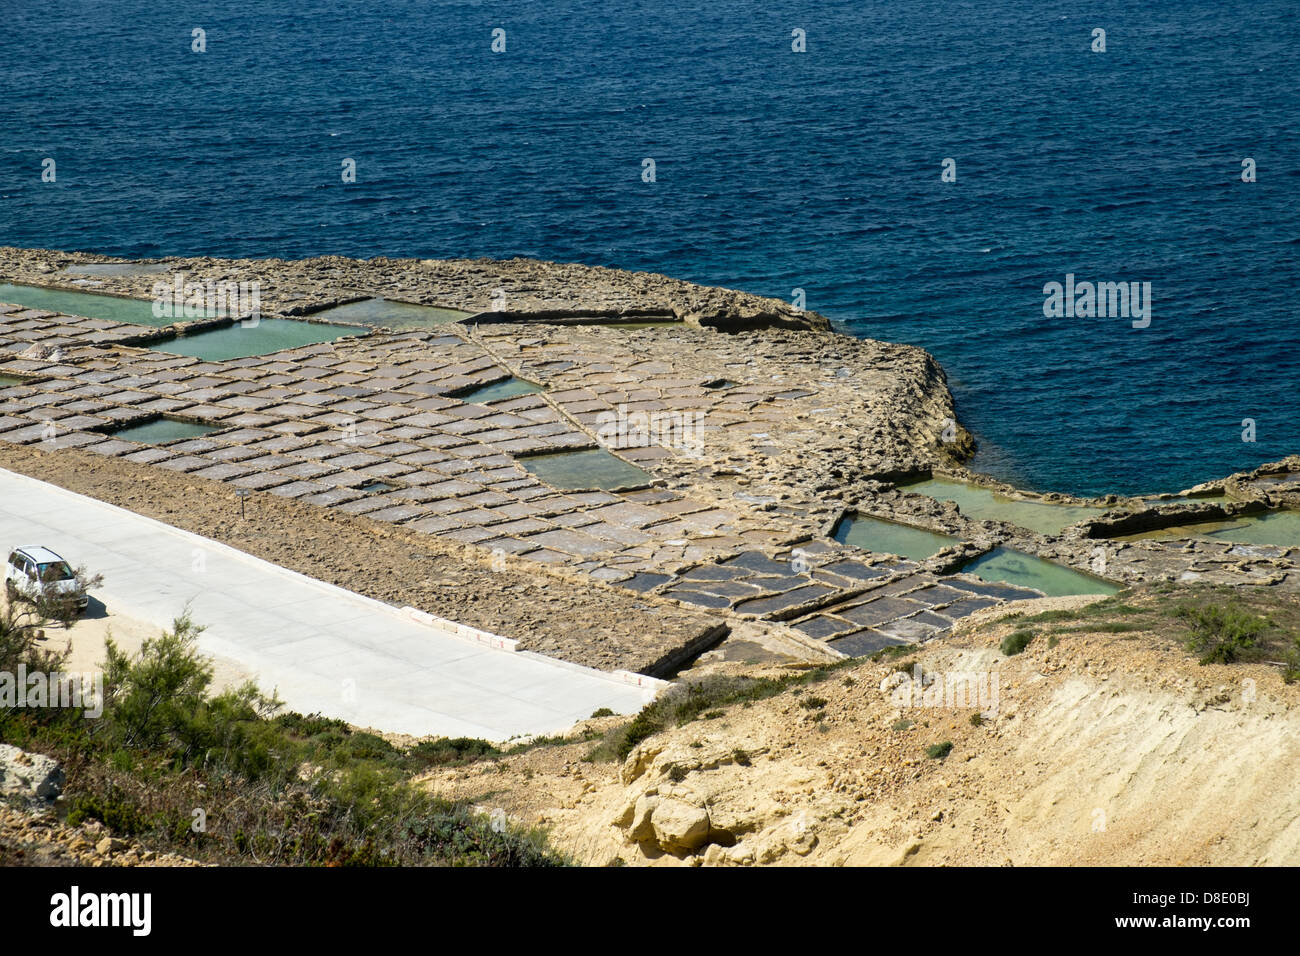 Vue générale de Marsalforn sur l'île de Gozo en Méditerranée Banque D'Images